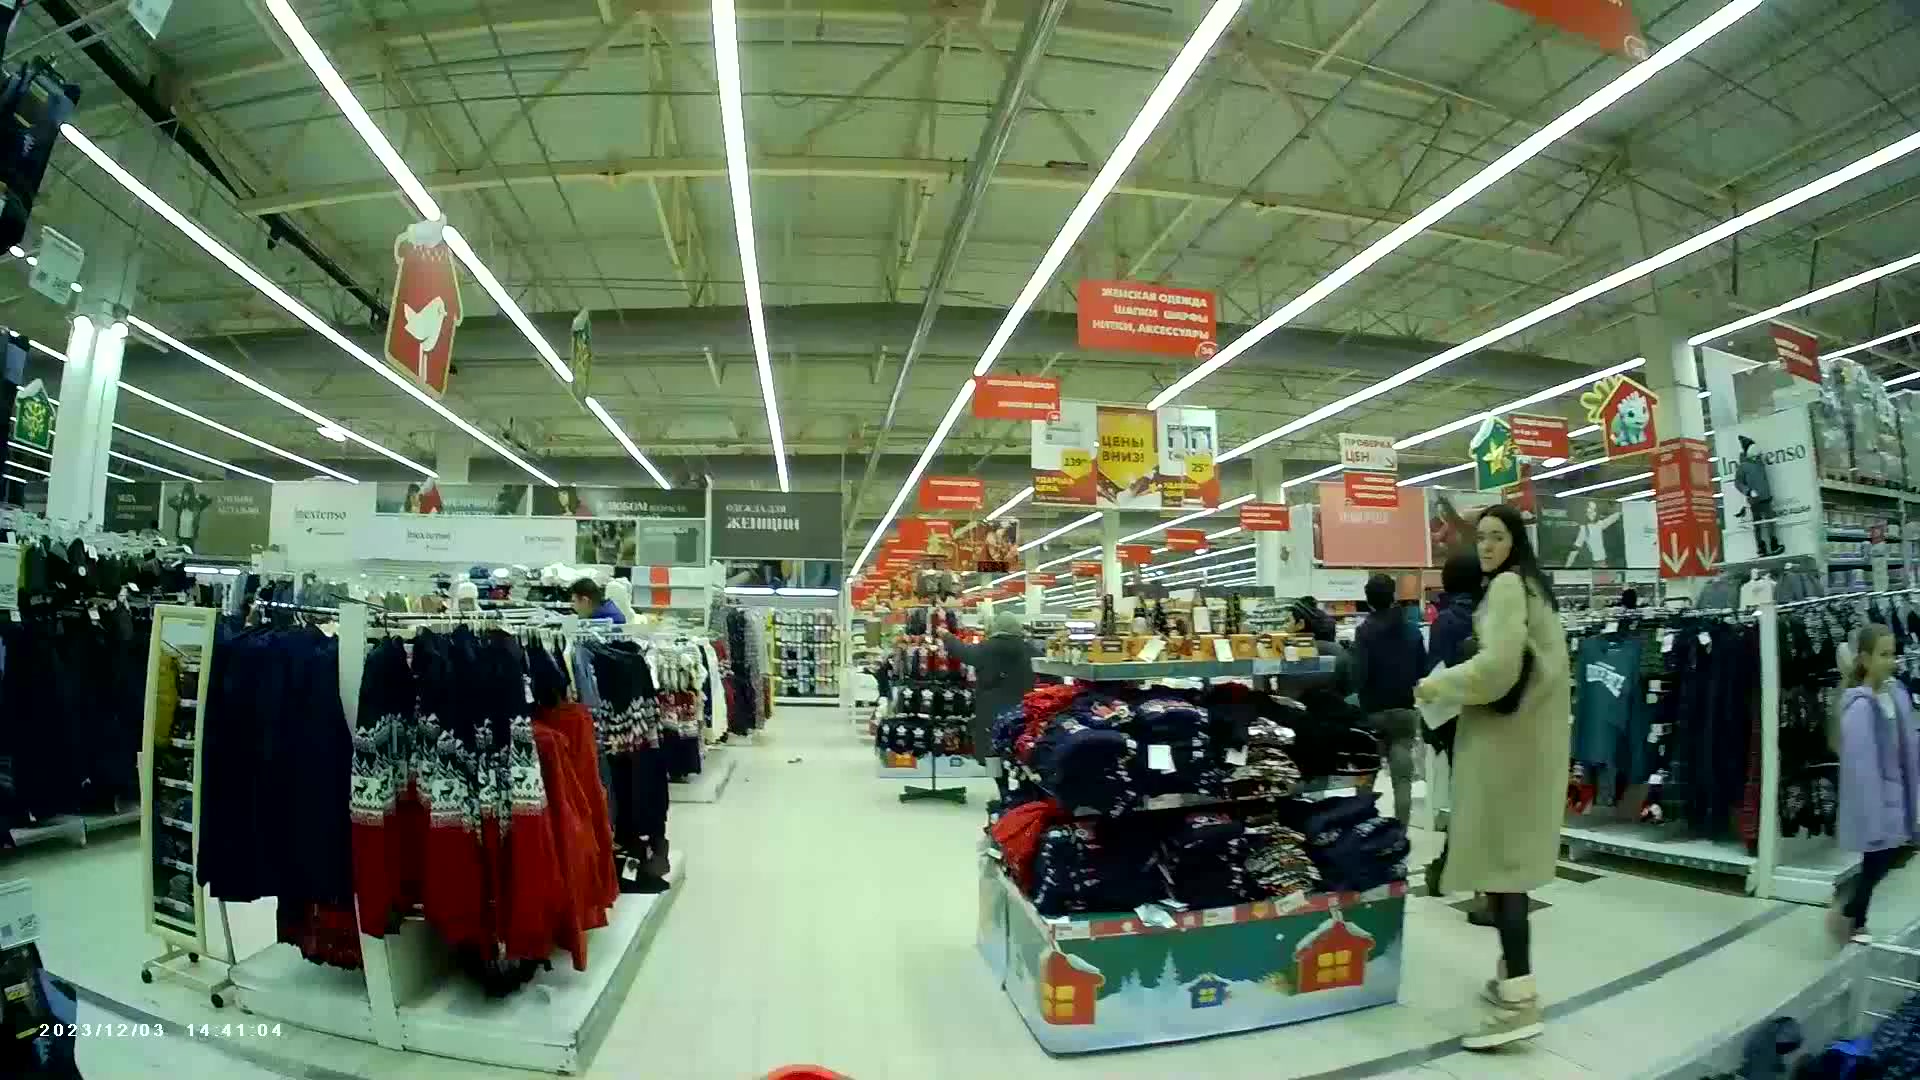 Скрытая камера в примерочной магазина женского нижнего белья. Смотреть русское порно видео онлайн